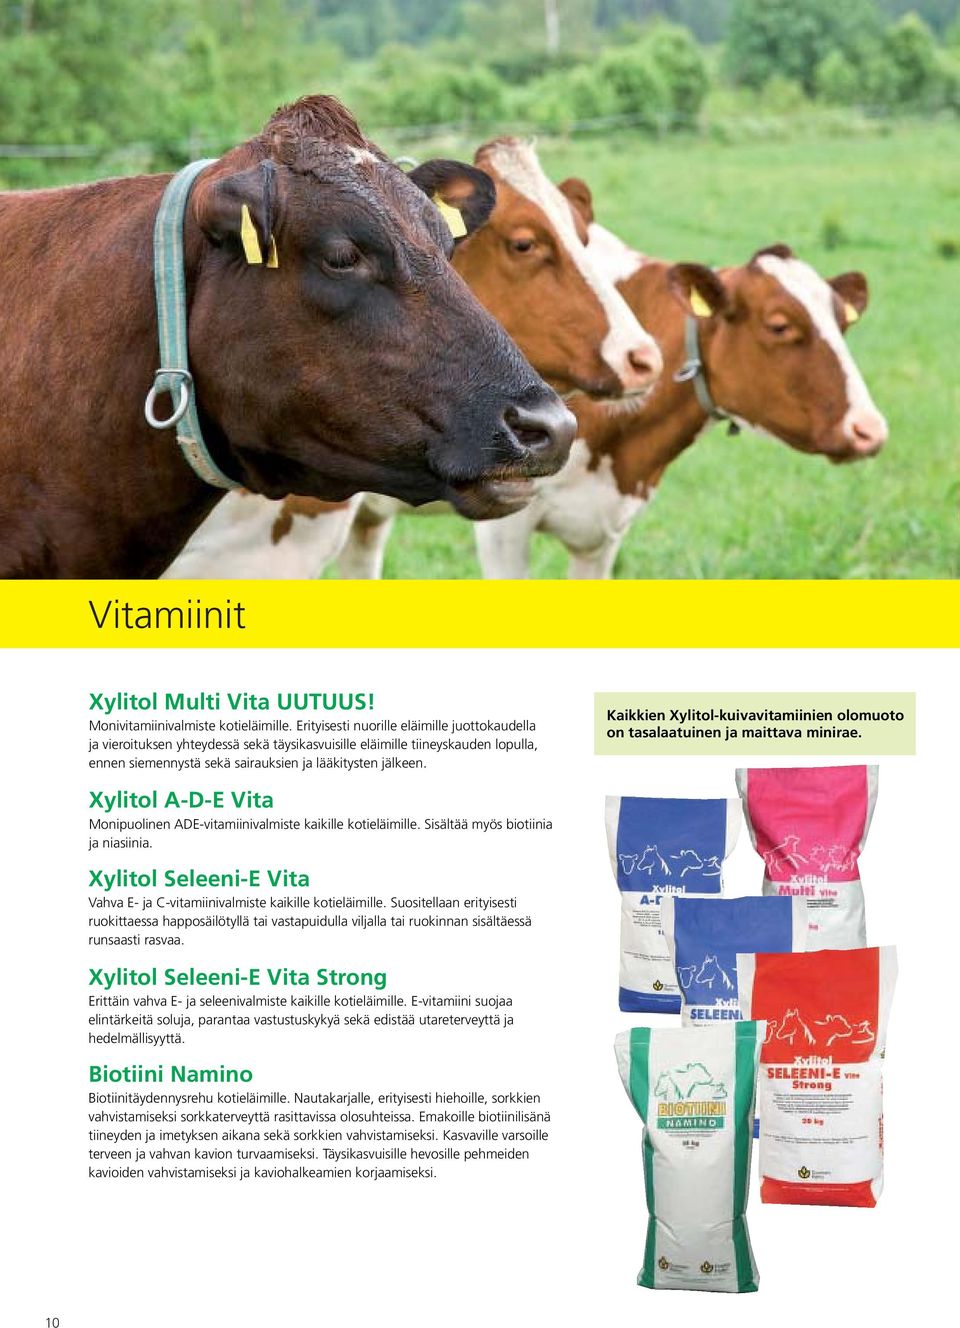 Kaikkien Xylitol-kuivavitamiinien olomuoto on tasalaatuinen ja maittava minirae. Xylitol A-D-E Vita Monipuolinen ADE-vitamiinivalmiste kaikille kotieläimille. Sisältää myös biotiinia ja niasiinia.